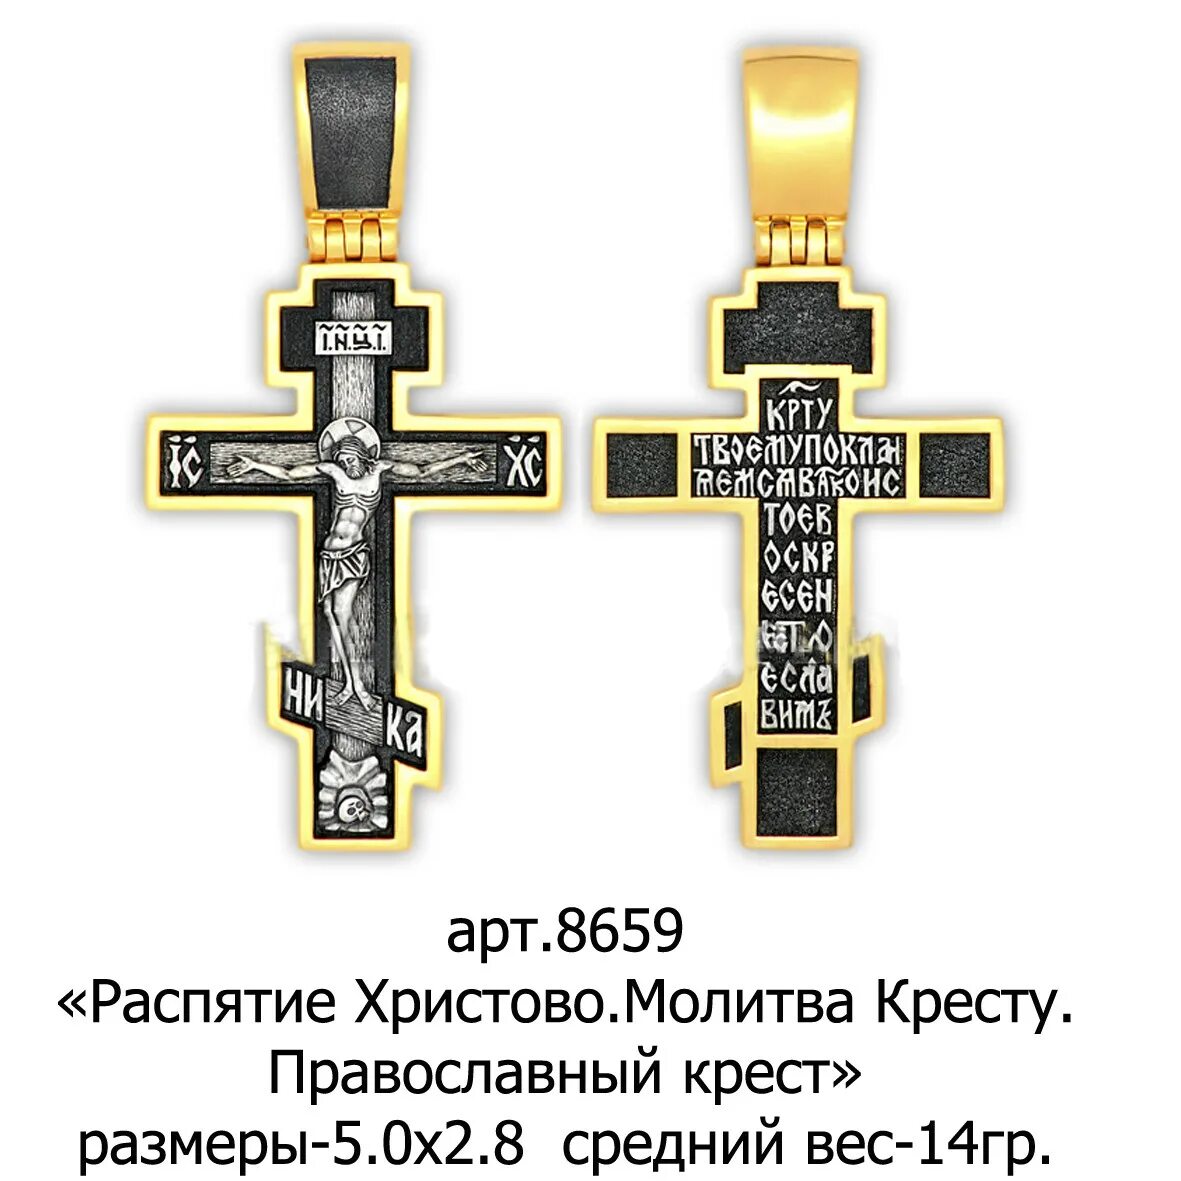 Православный крест. Православный крестик. Формы православных крестов. Православие крест. Какие есть православные кресты